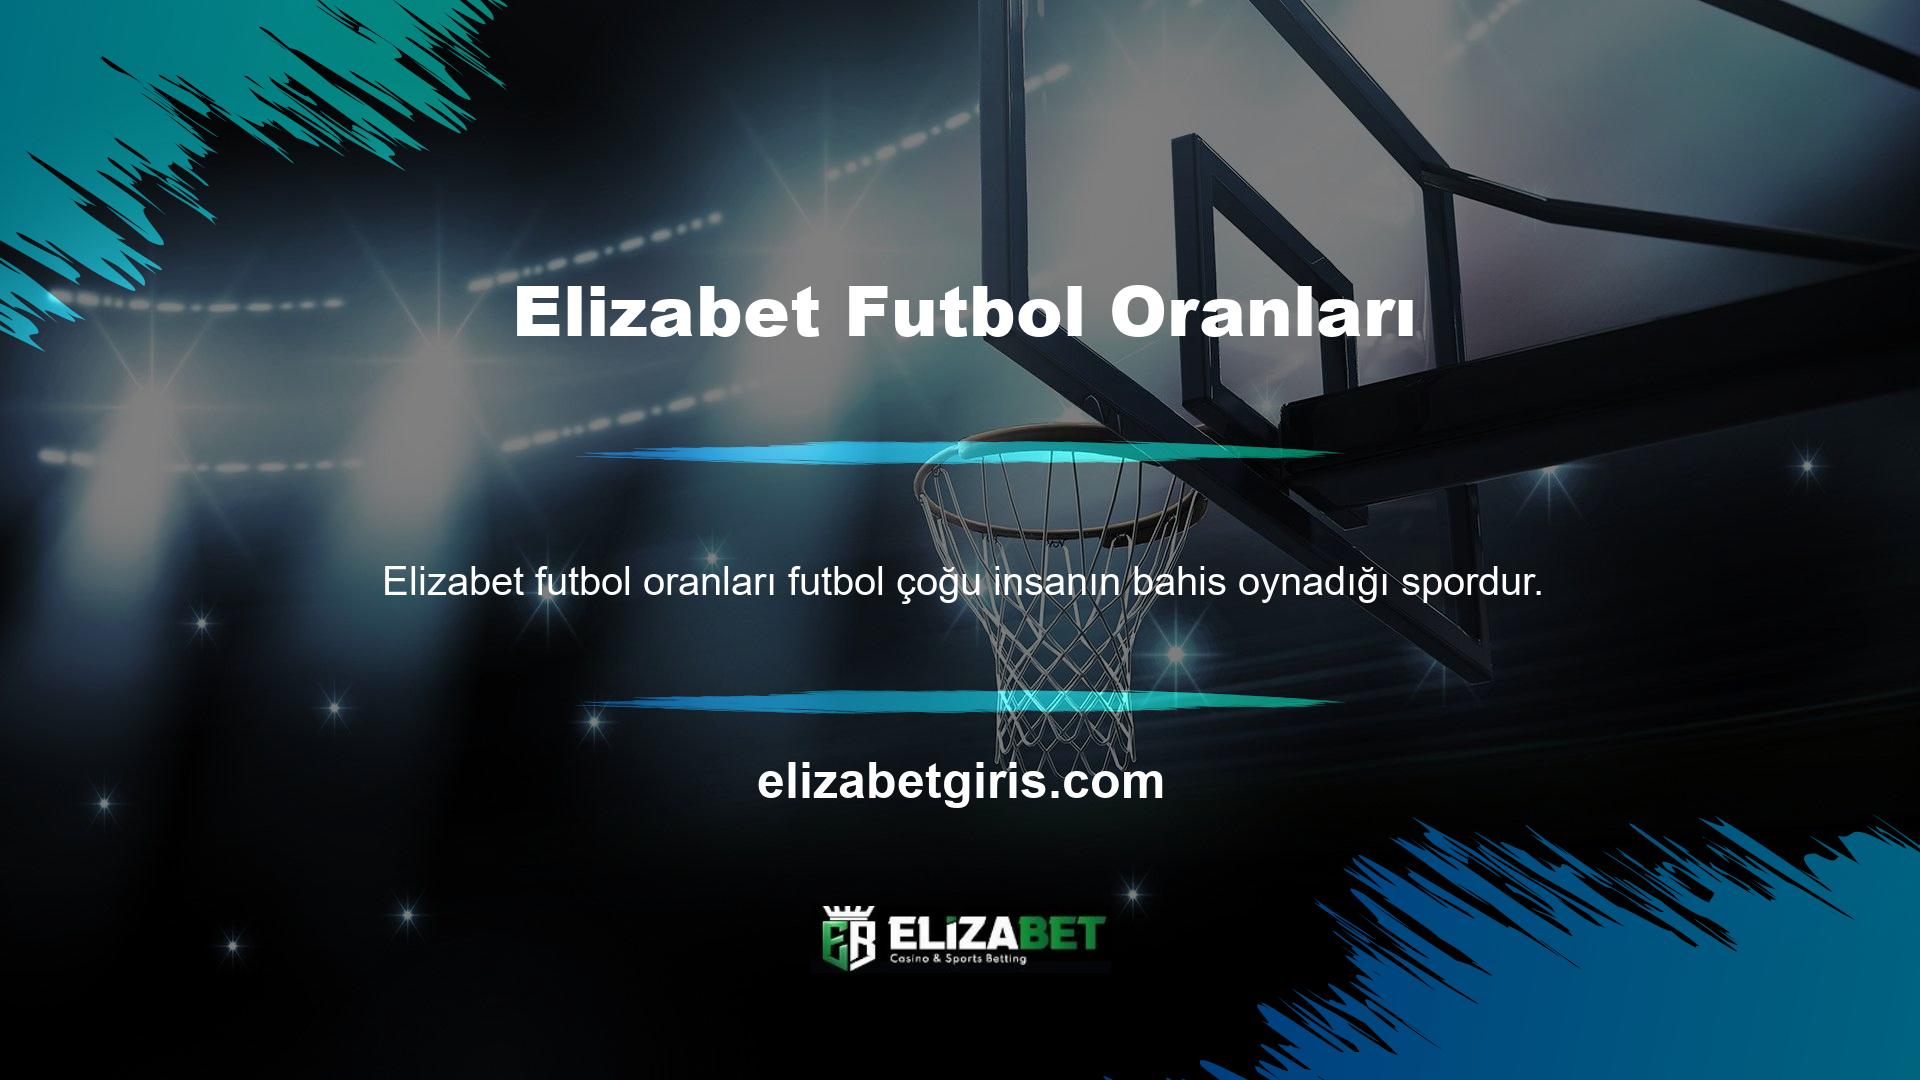 Türkiye liglerinin yanı sıra Avrupa'nın en ünlü futbol liglerine de bahis yapma imkanınız bulunmaktadır